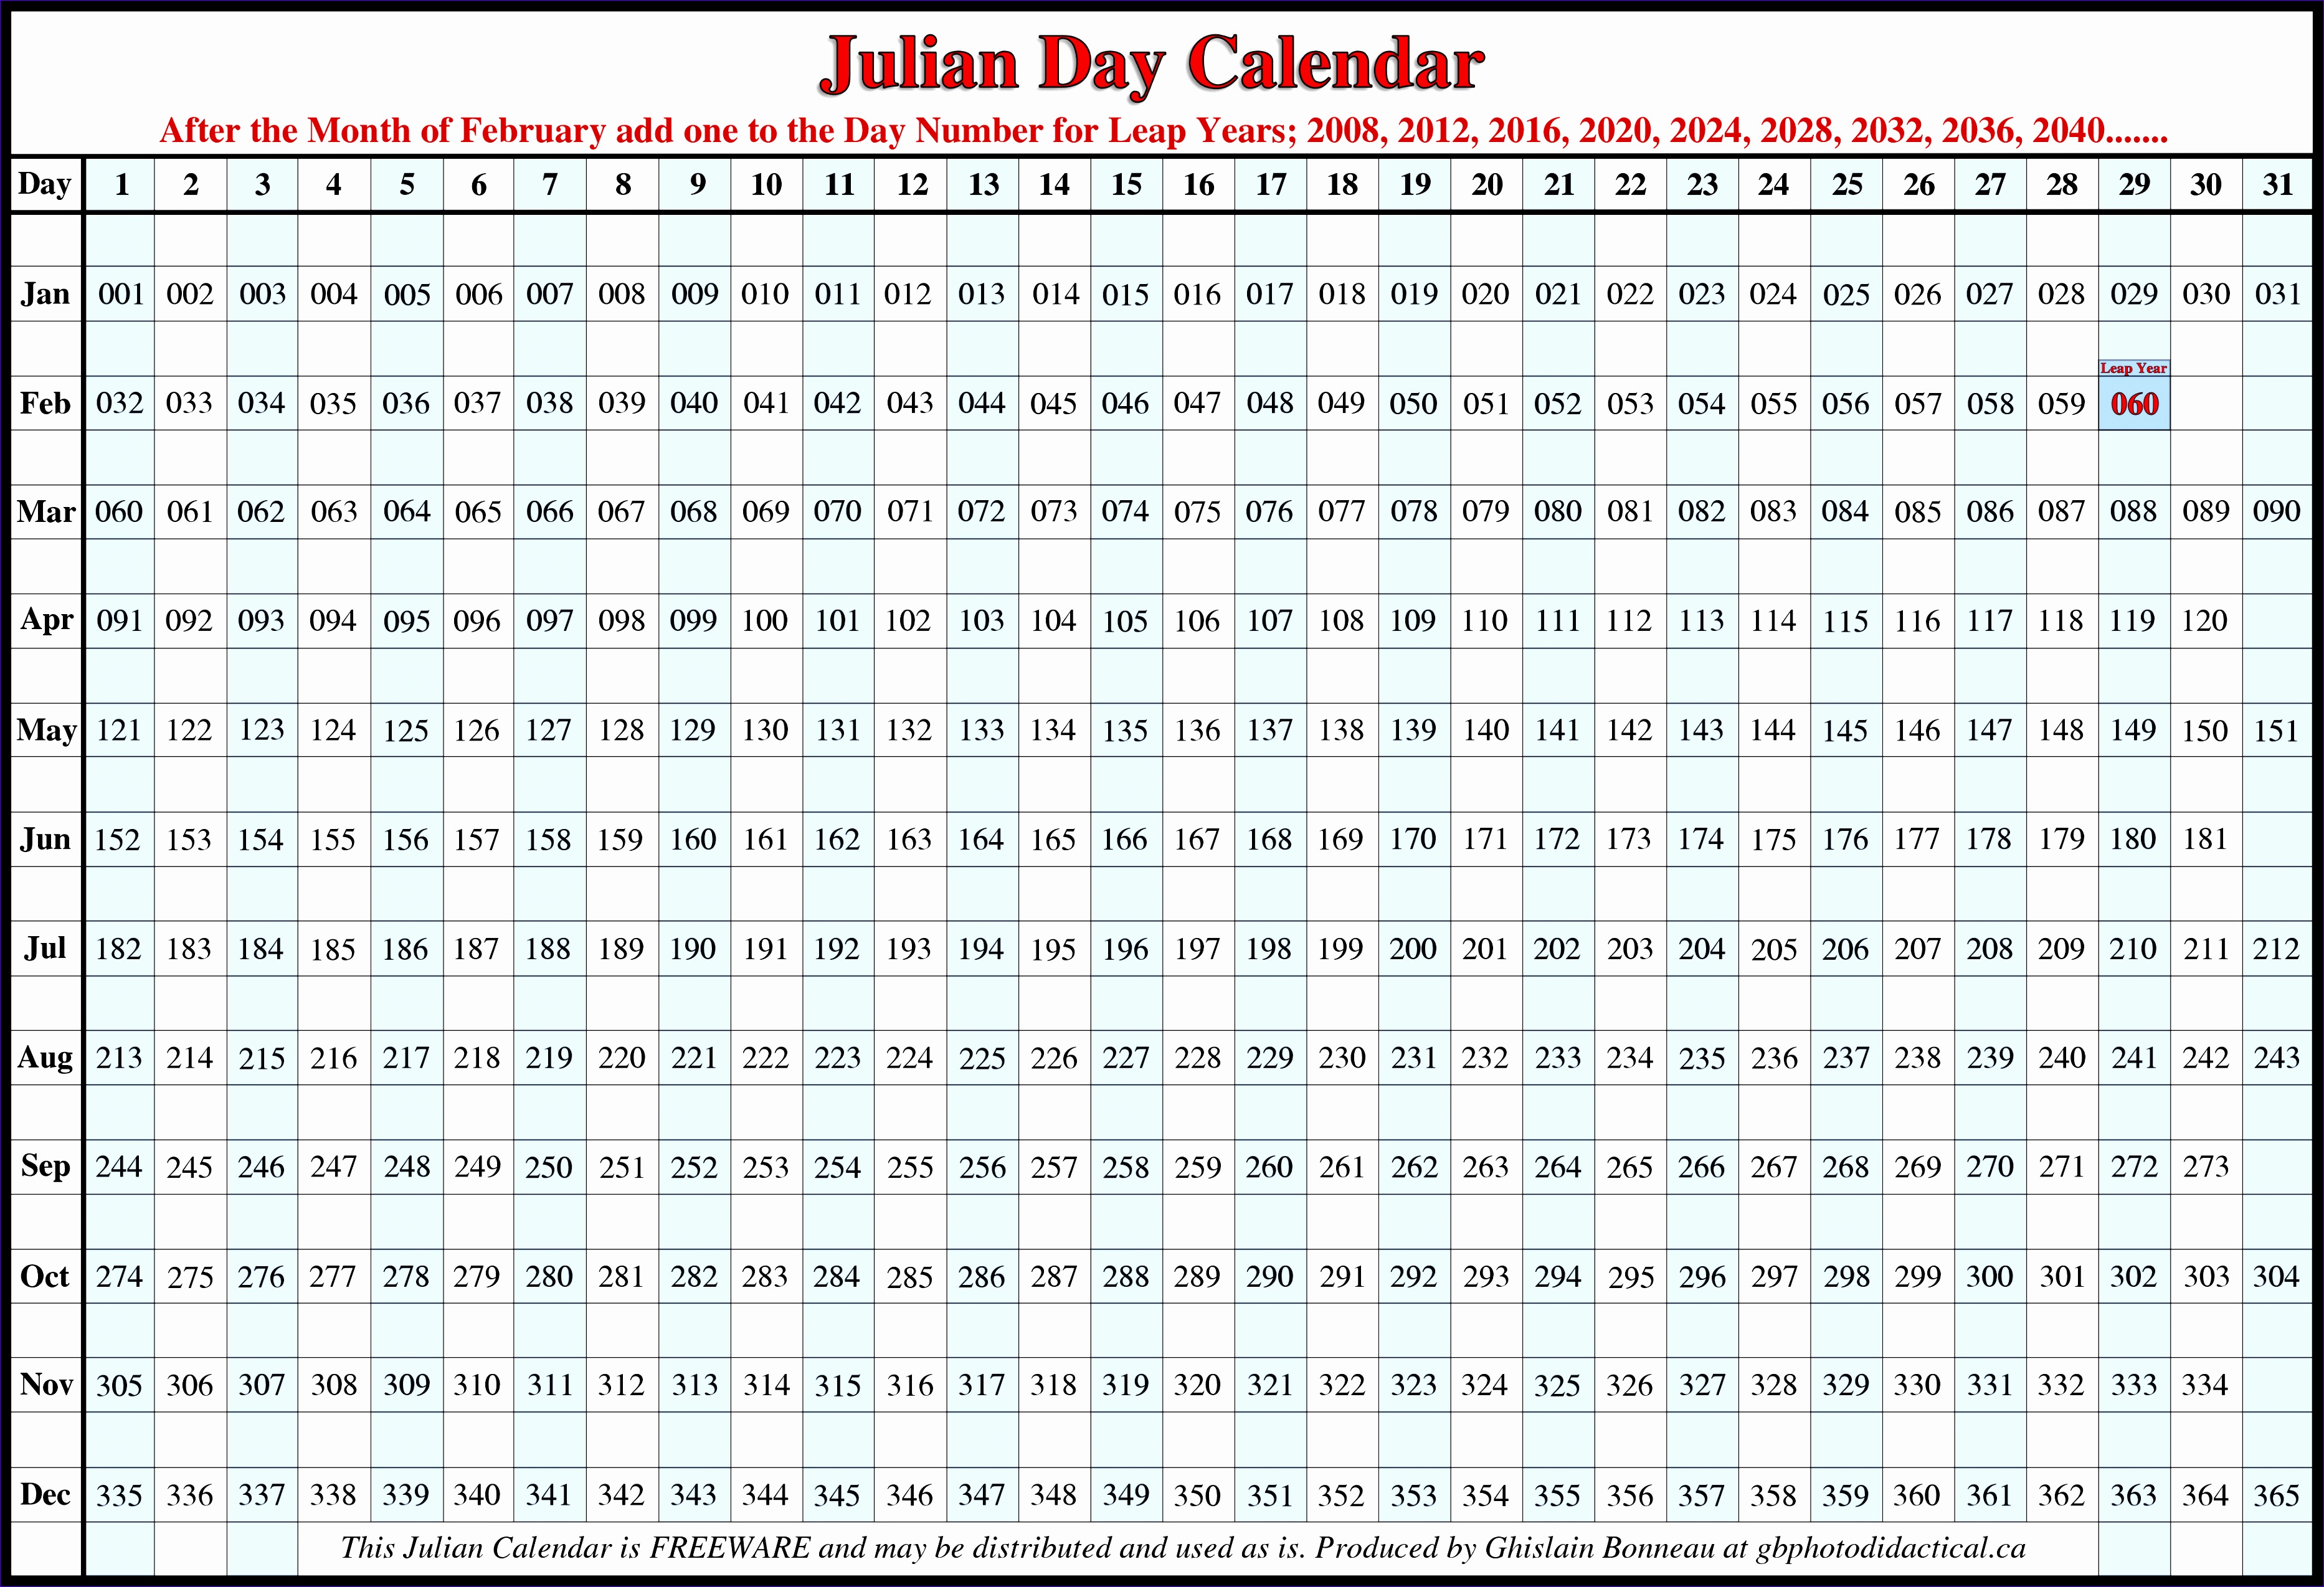 julian calendar julian calendar orig aebtkc eeimyq 37312548